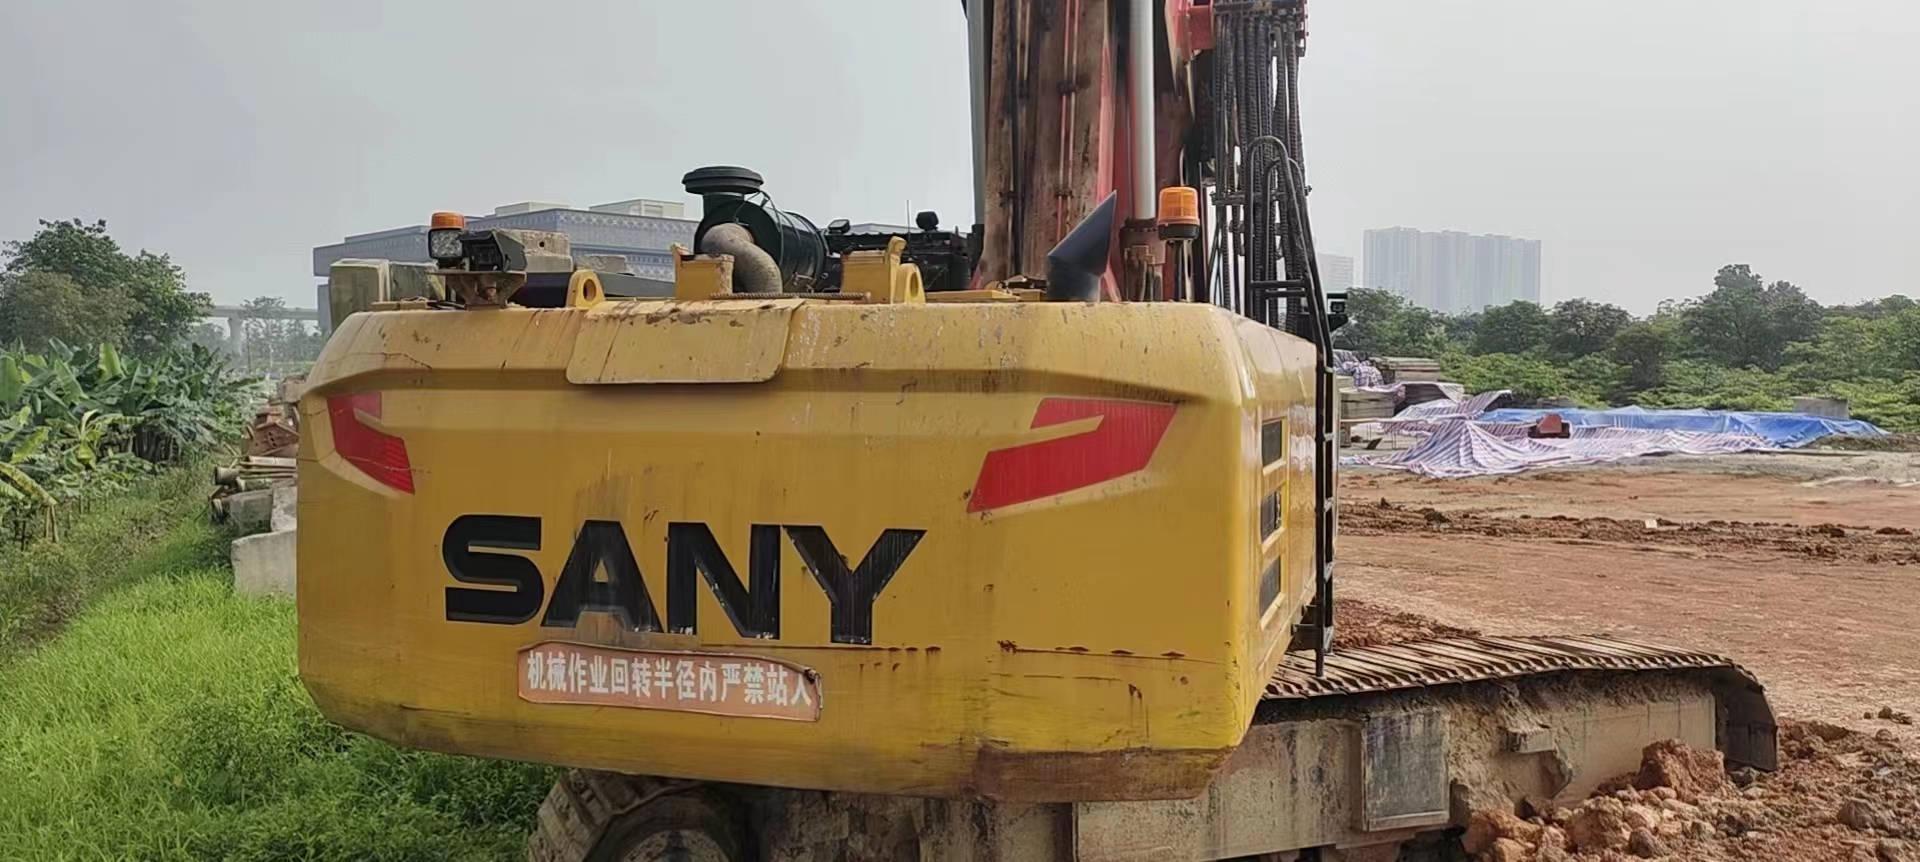 Б/у высокопроизводительное тяжелое горнодобывающее оборудование китайской марки Sany SR360 для ротационного бурения глубоких фундаментов 6